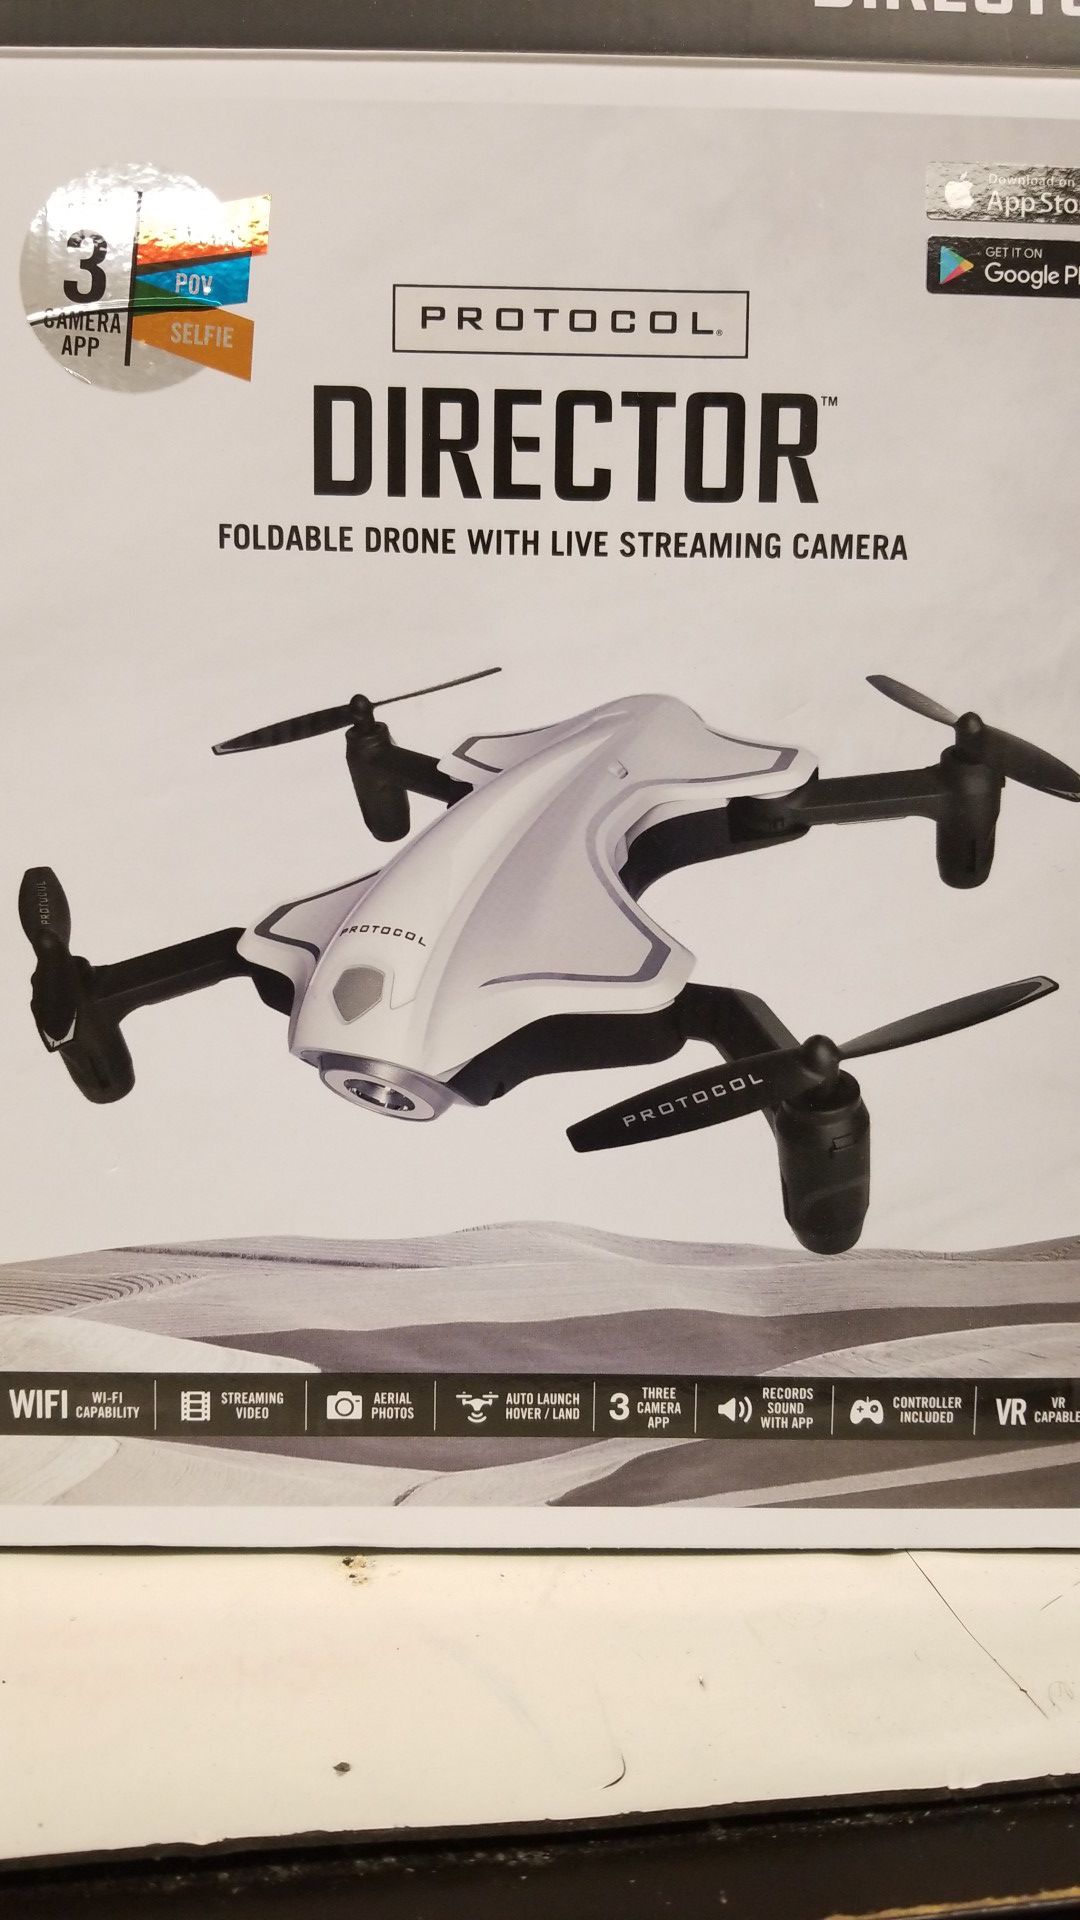 PROTOCOL DIRECTOR FPV DRONE